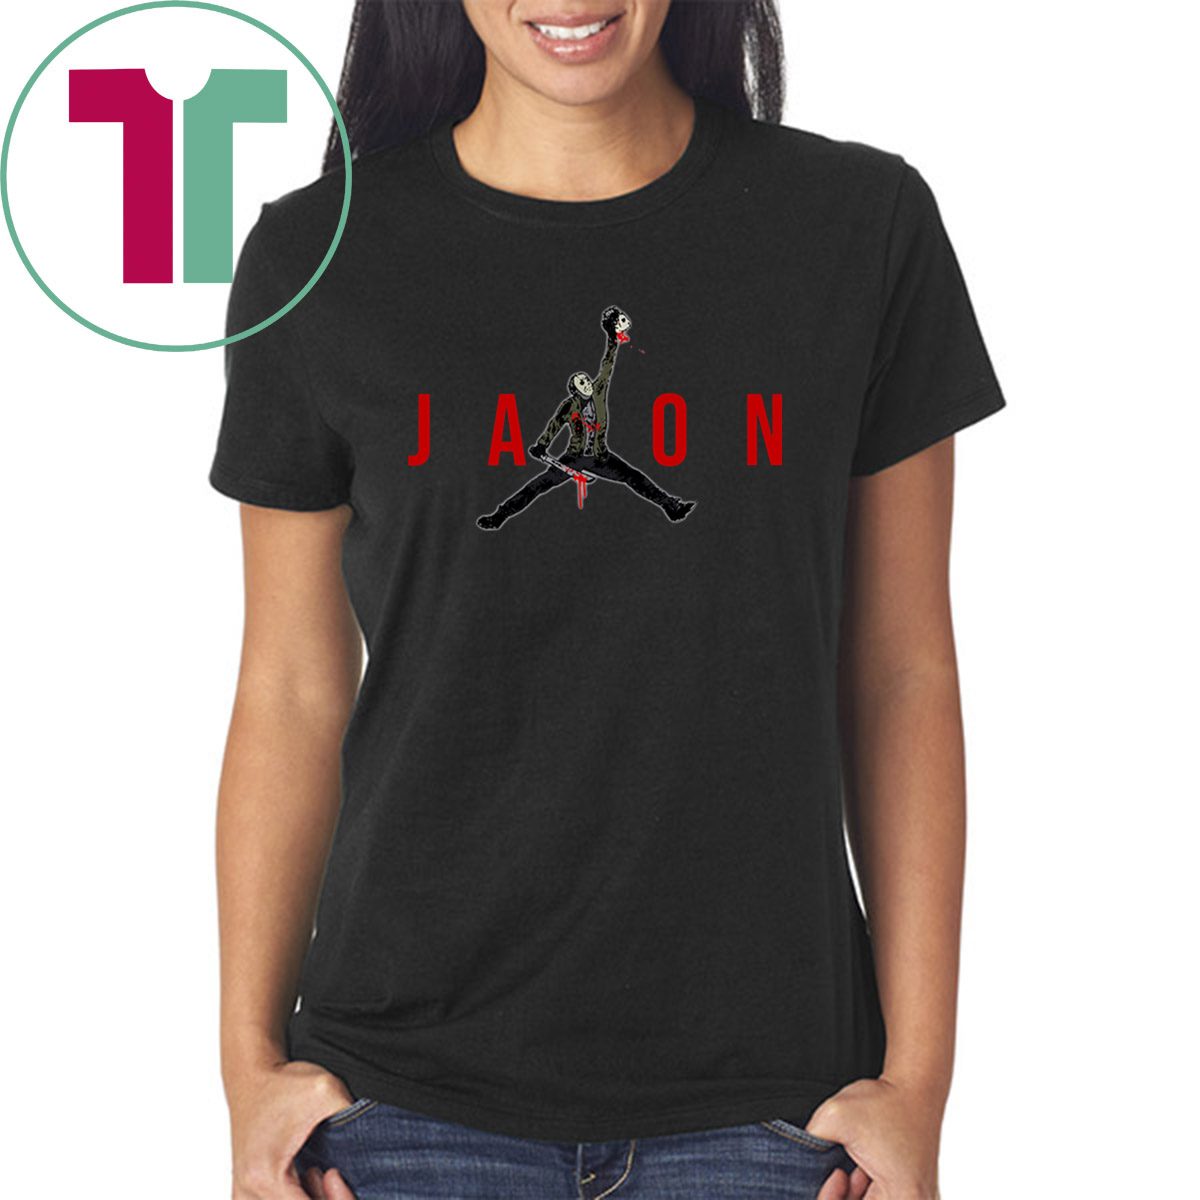 Jason Voorhees Air Jordan Tee Shirt